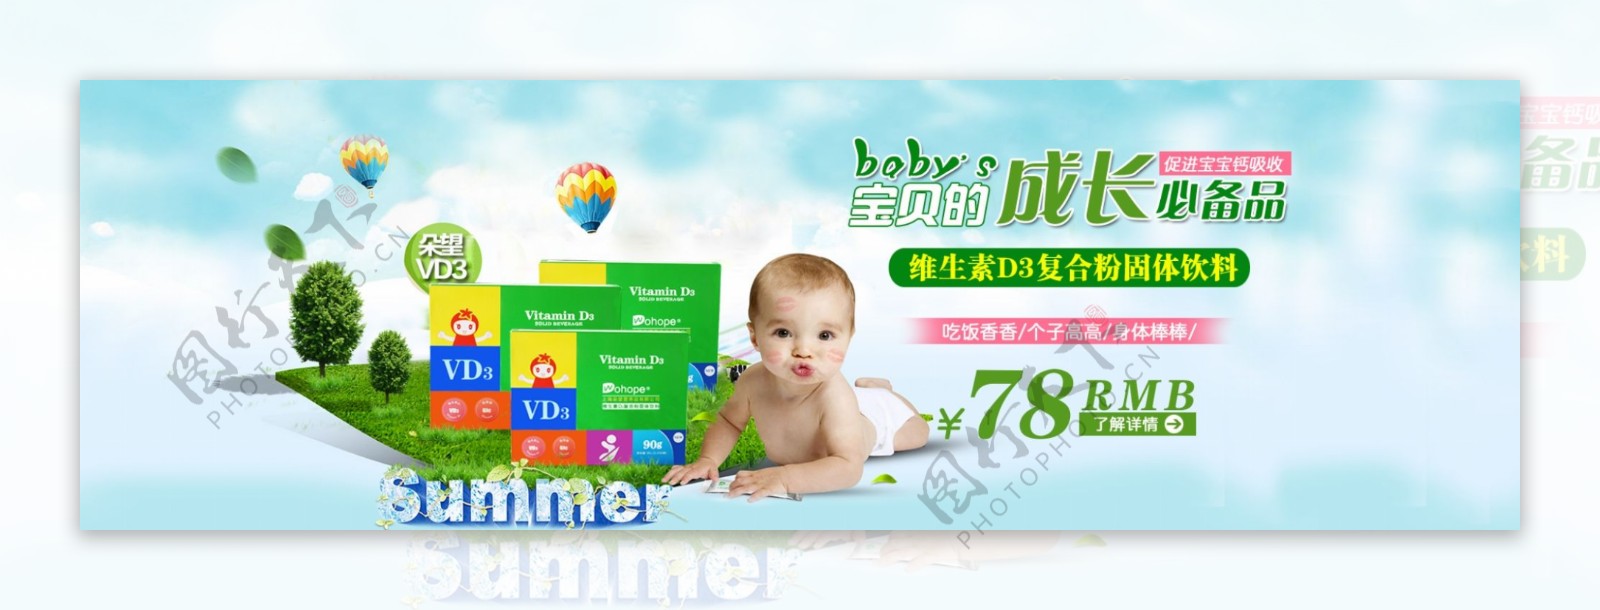 婴儿广告图片